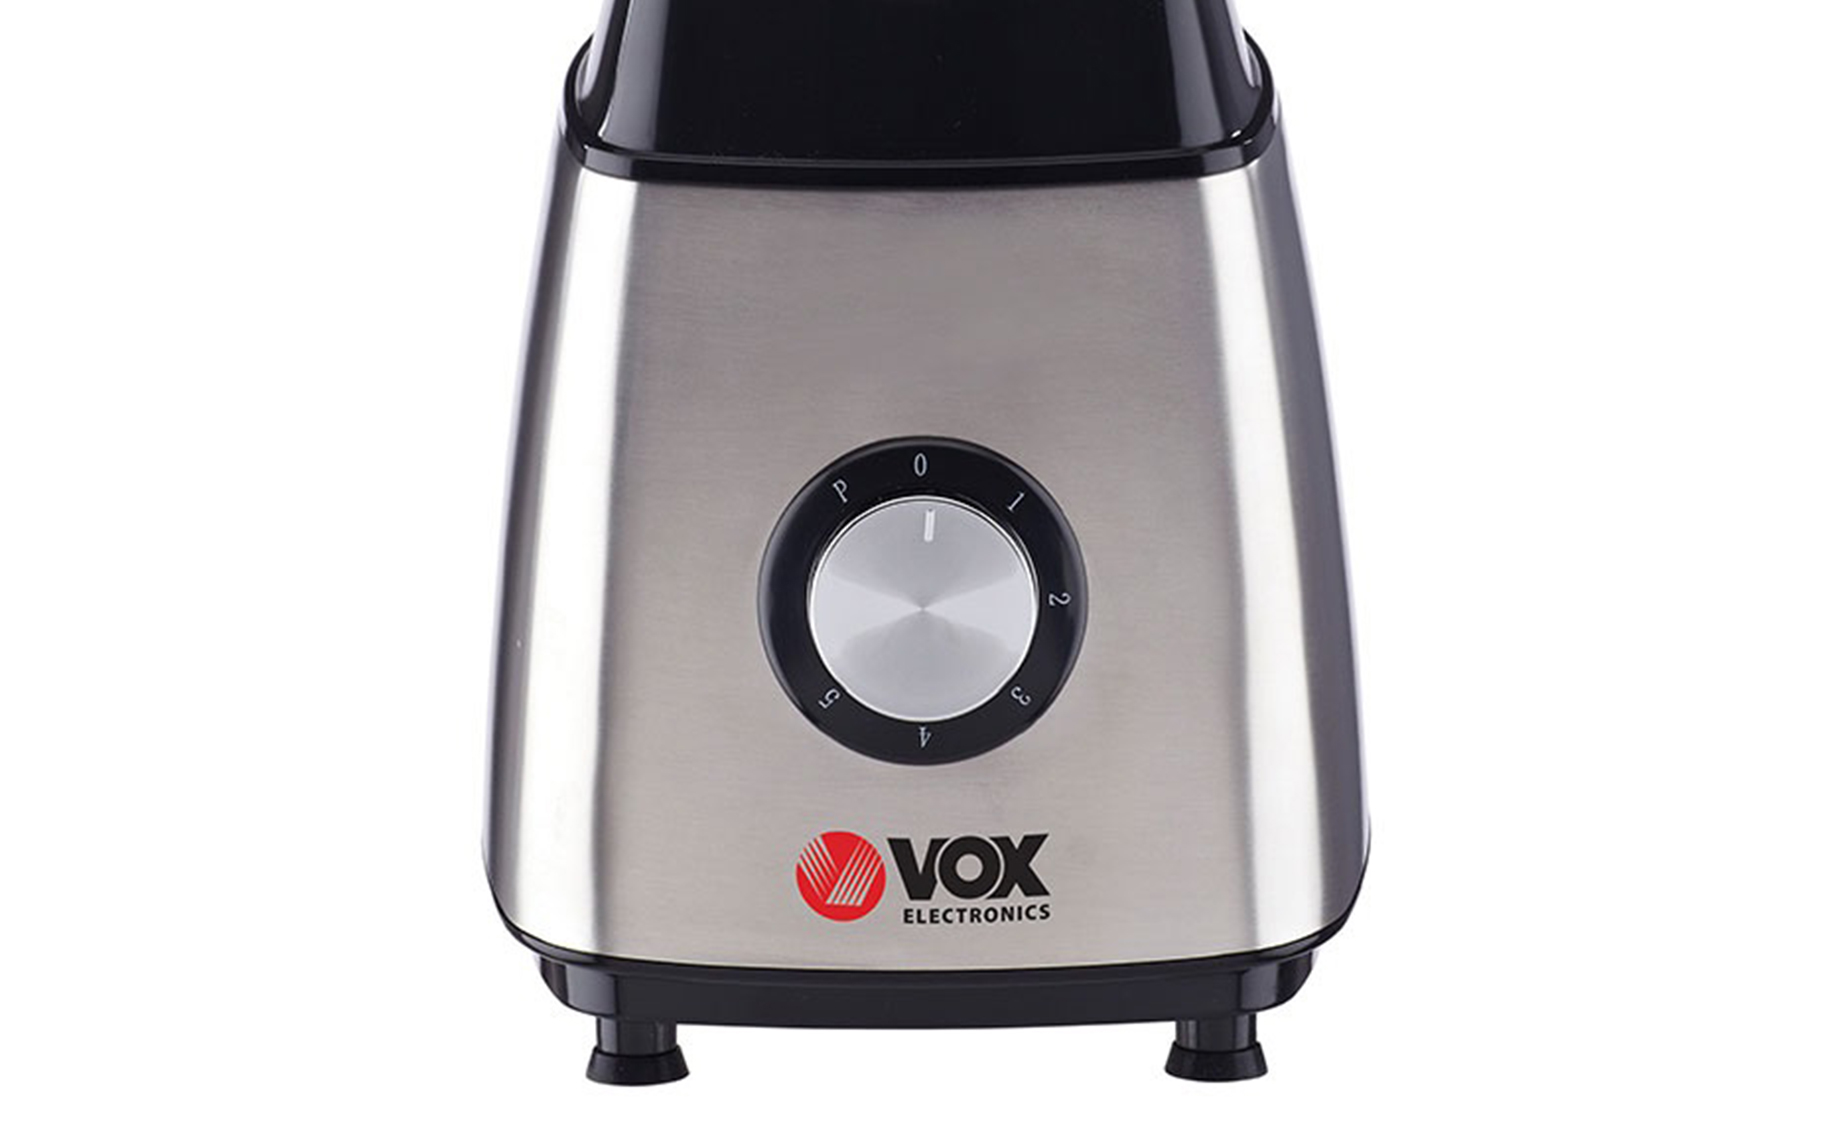 Vox TM-6105 blender